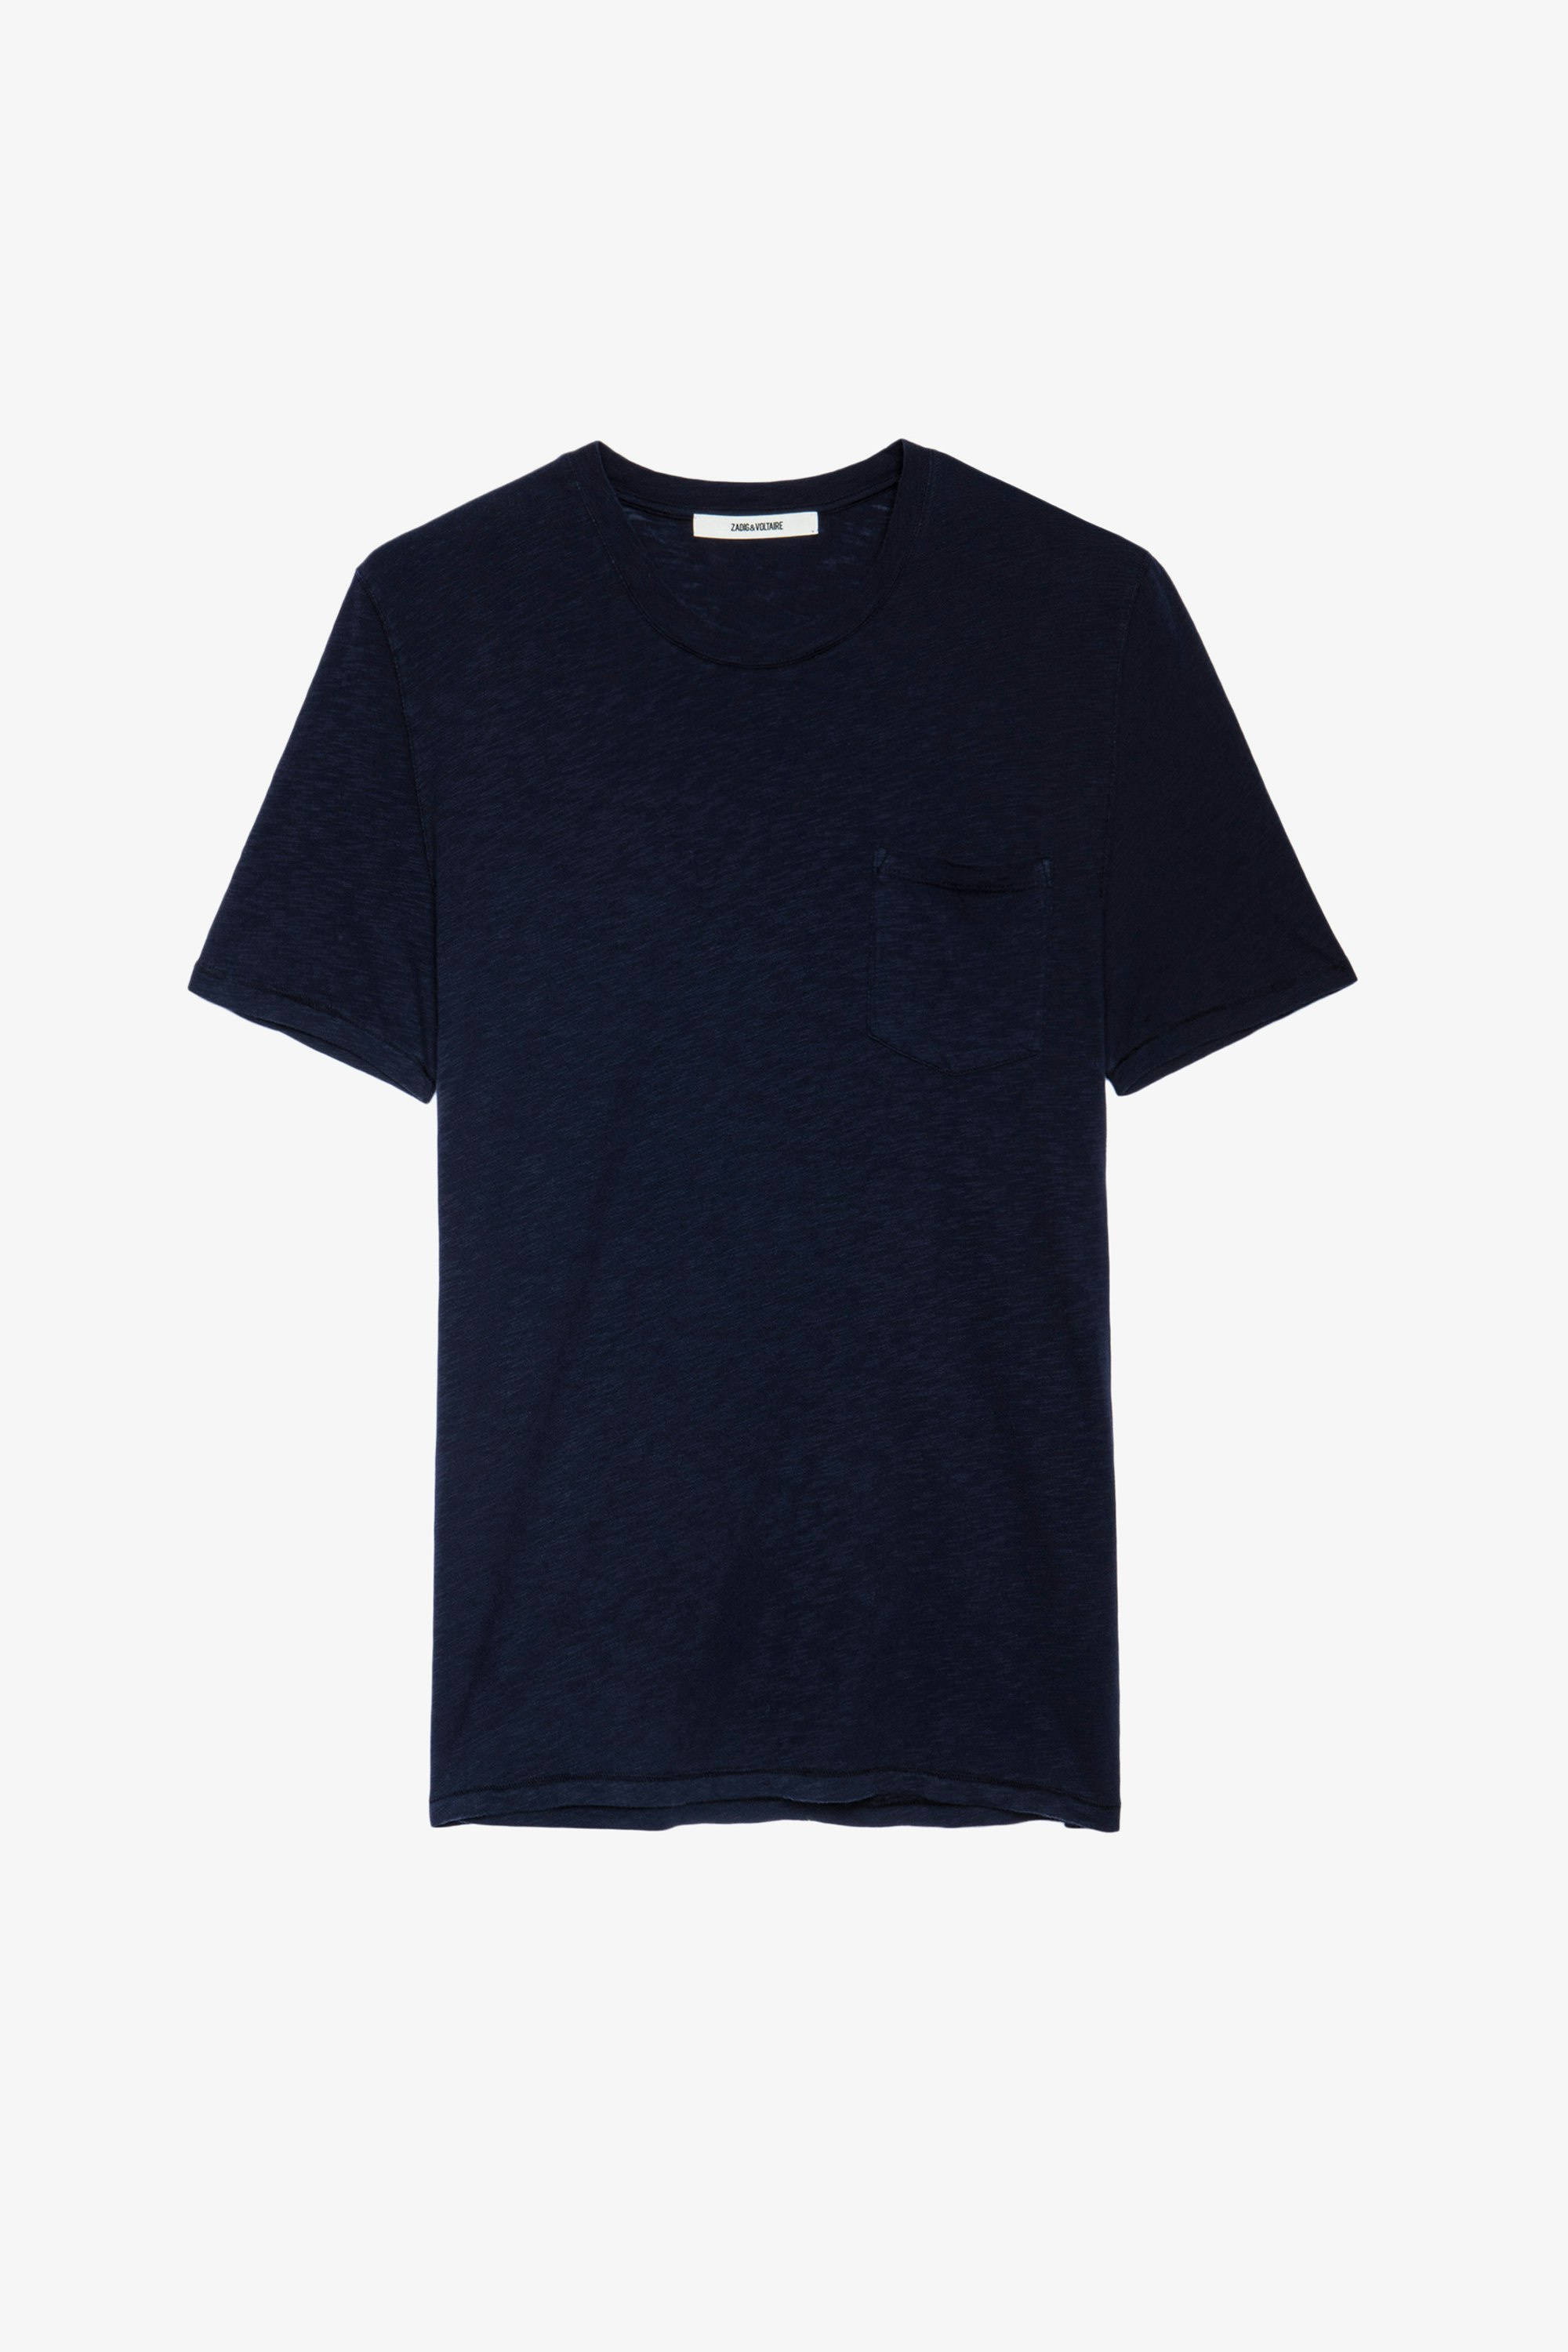 T-Shirt Stockholm undefined